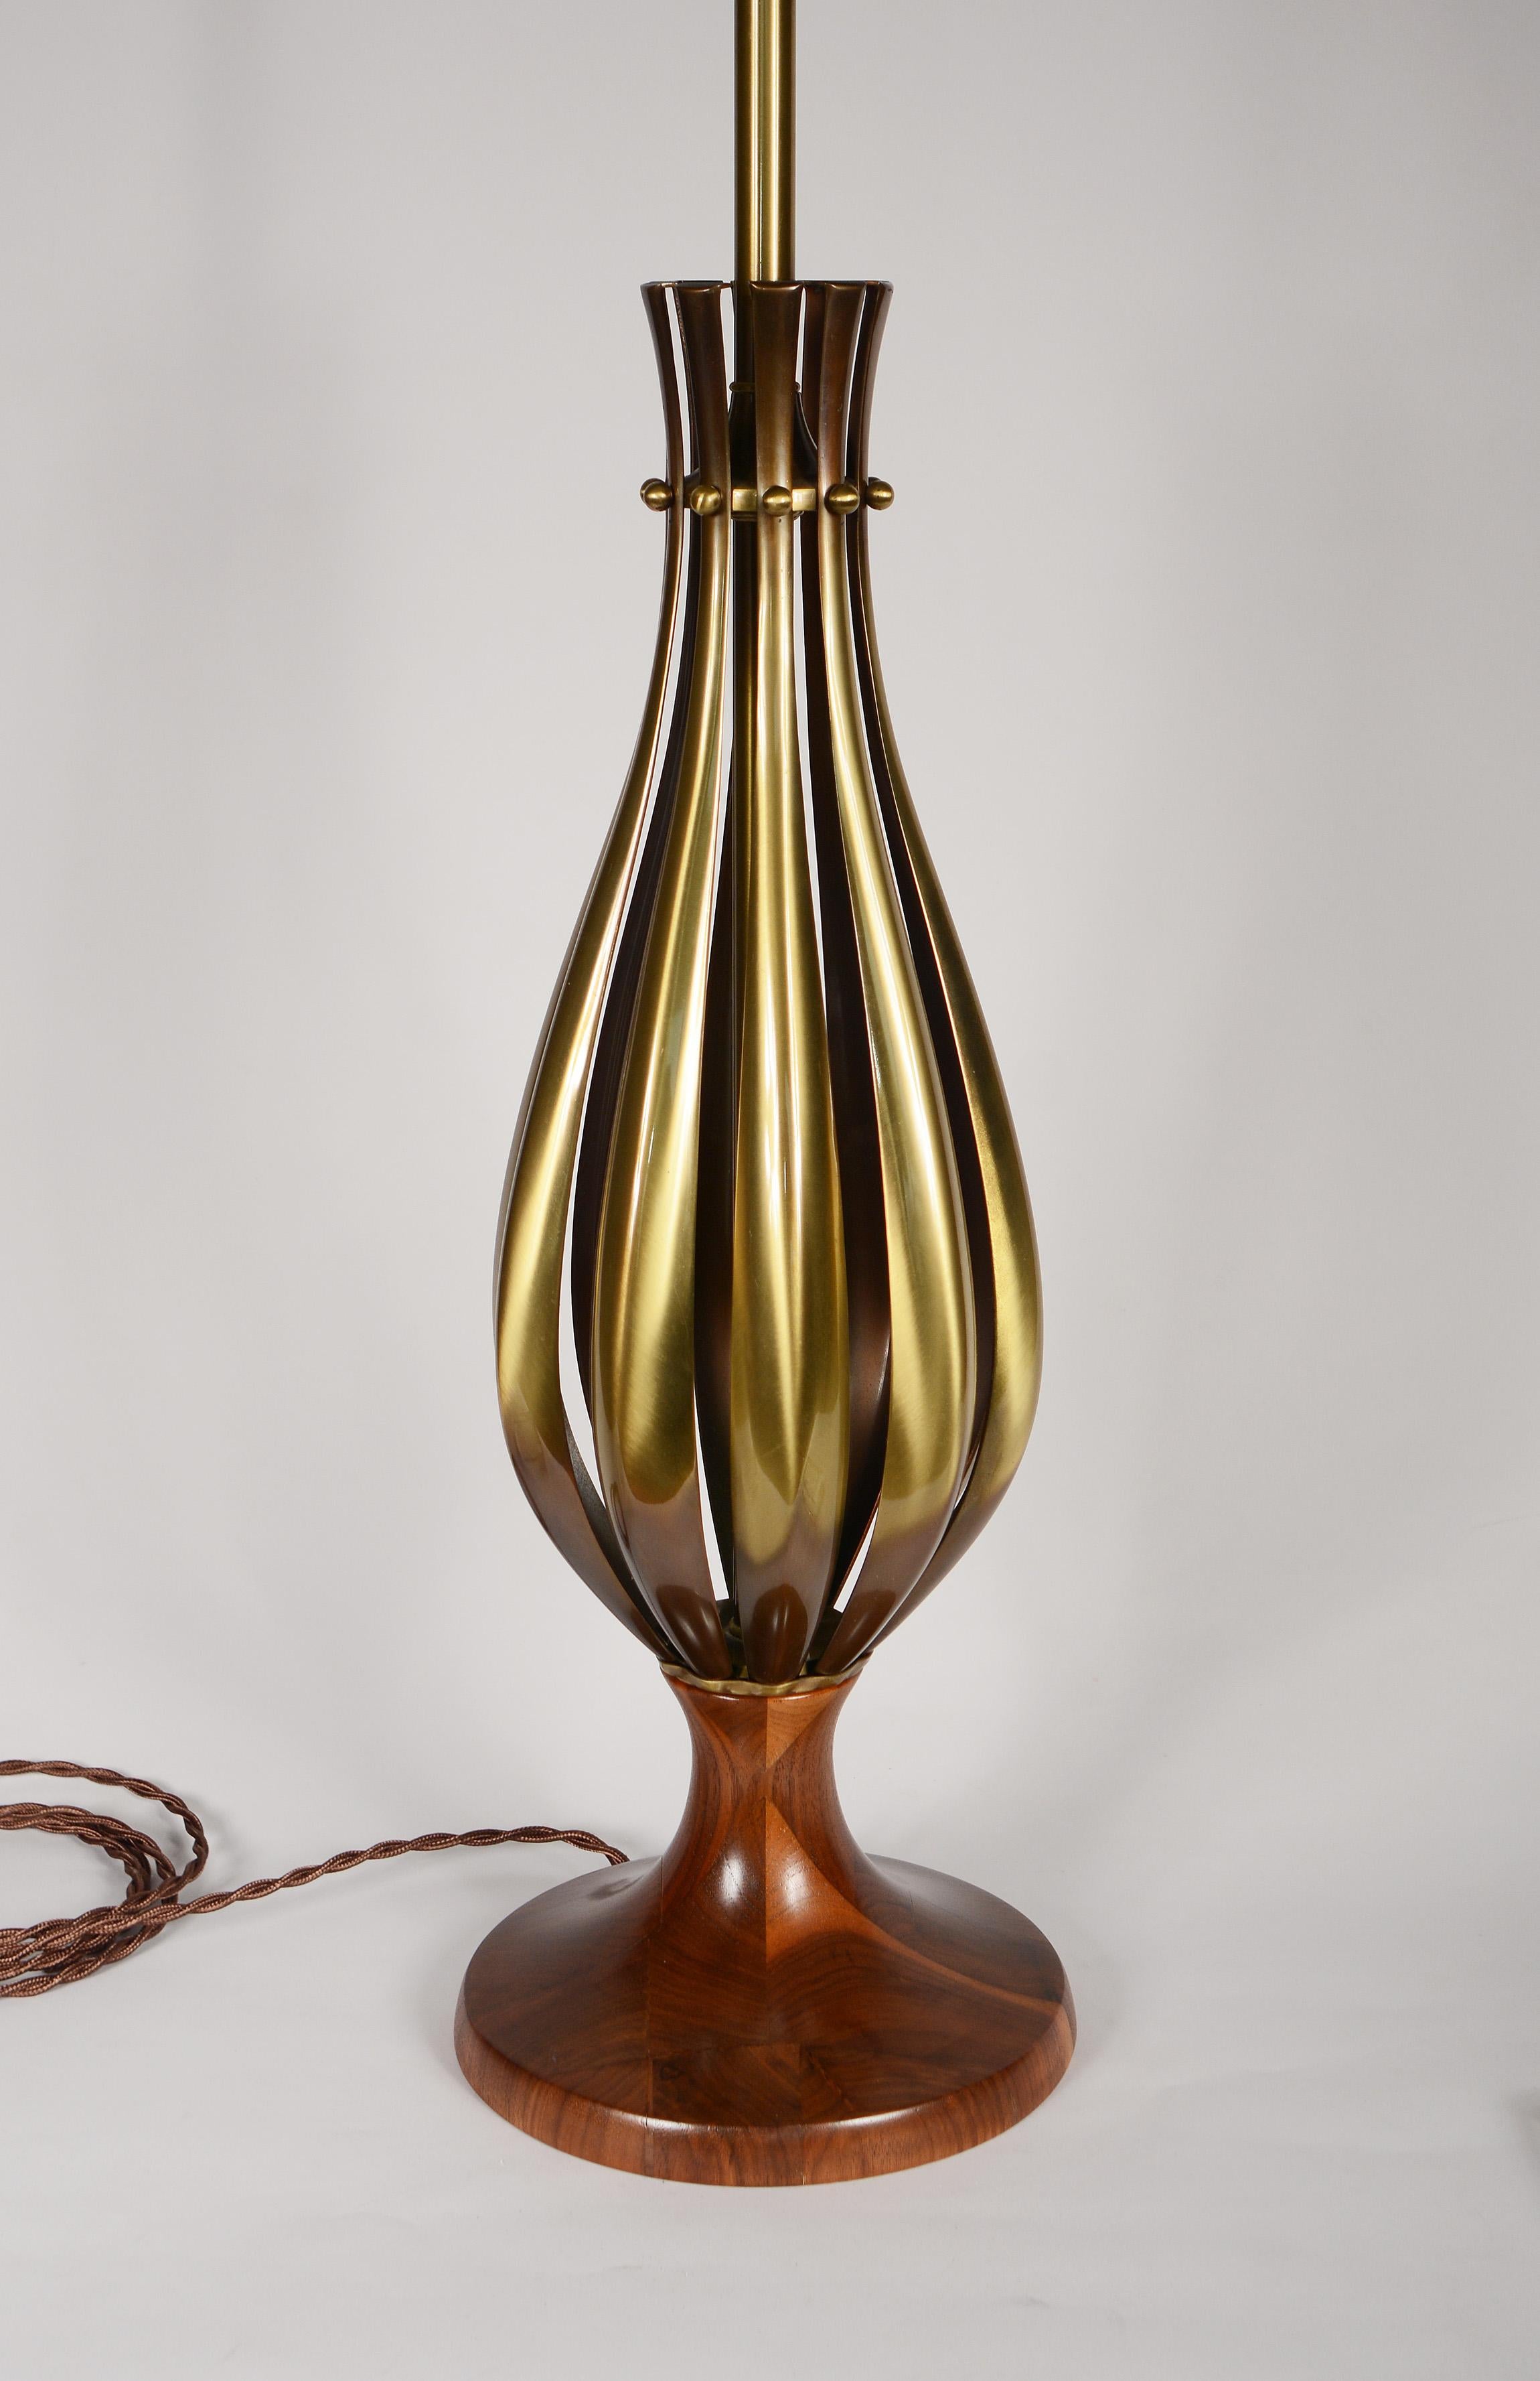 Rembrandt Tischlampe in Tulpenform mit Messingrippen und Sockel aus Nussbaumholz. Diese Lampe hat einen Dreiwege-Schalter an der Fassung und einen zweiten Schalter am Sockel, mit dem die Lampe ein- und ausgeschaltet werden kann.